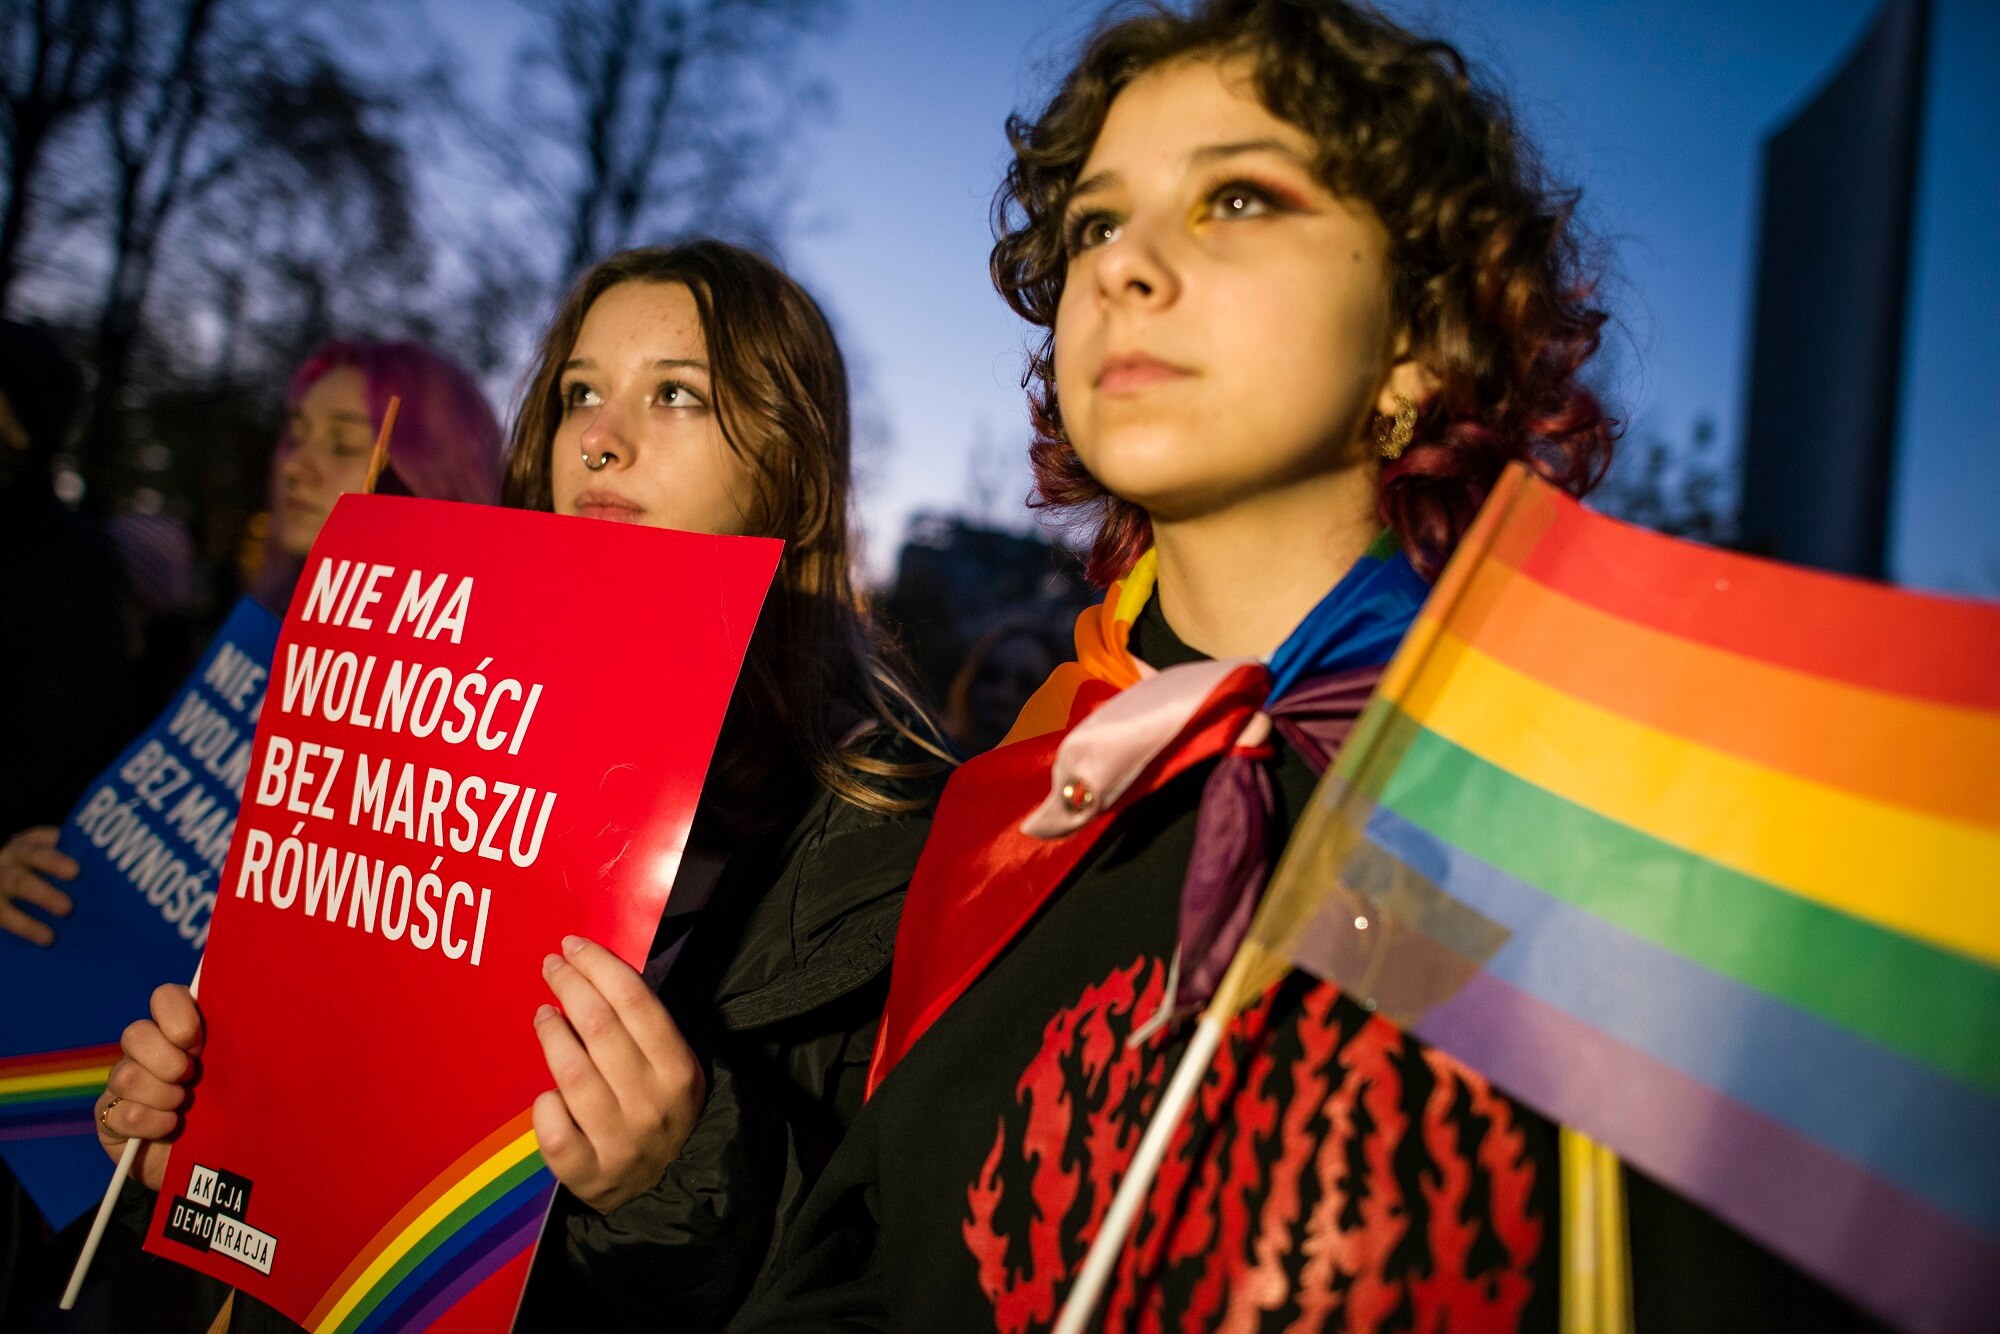 Ludzie zebrali się przed polskim parlamentem w Warszawie, aby zaprotestować przeciwko ustawie, która całkowicie zakazuje marszów równości.